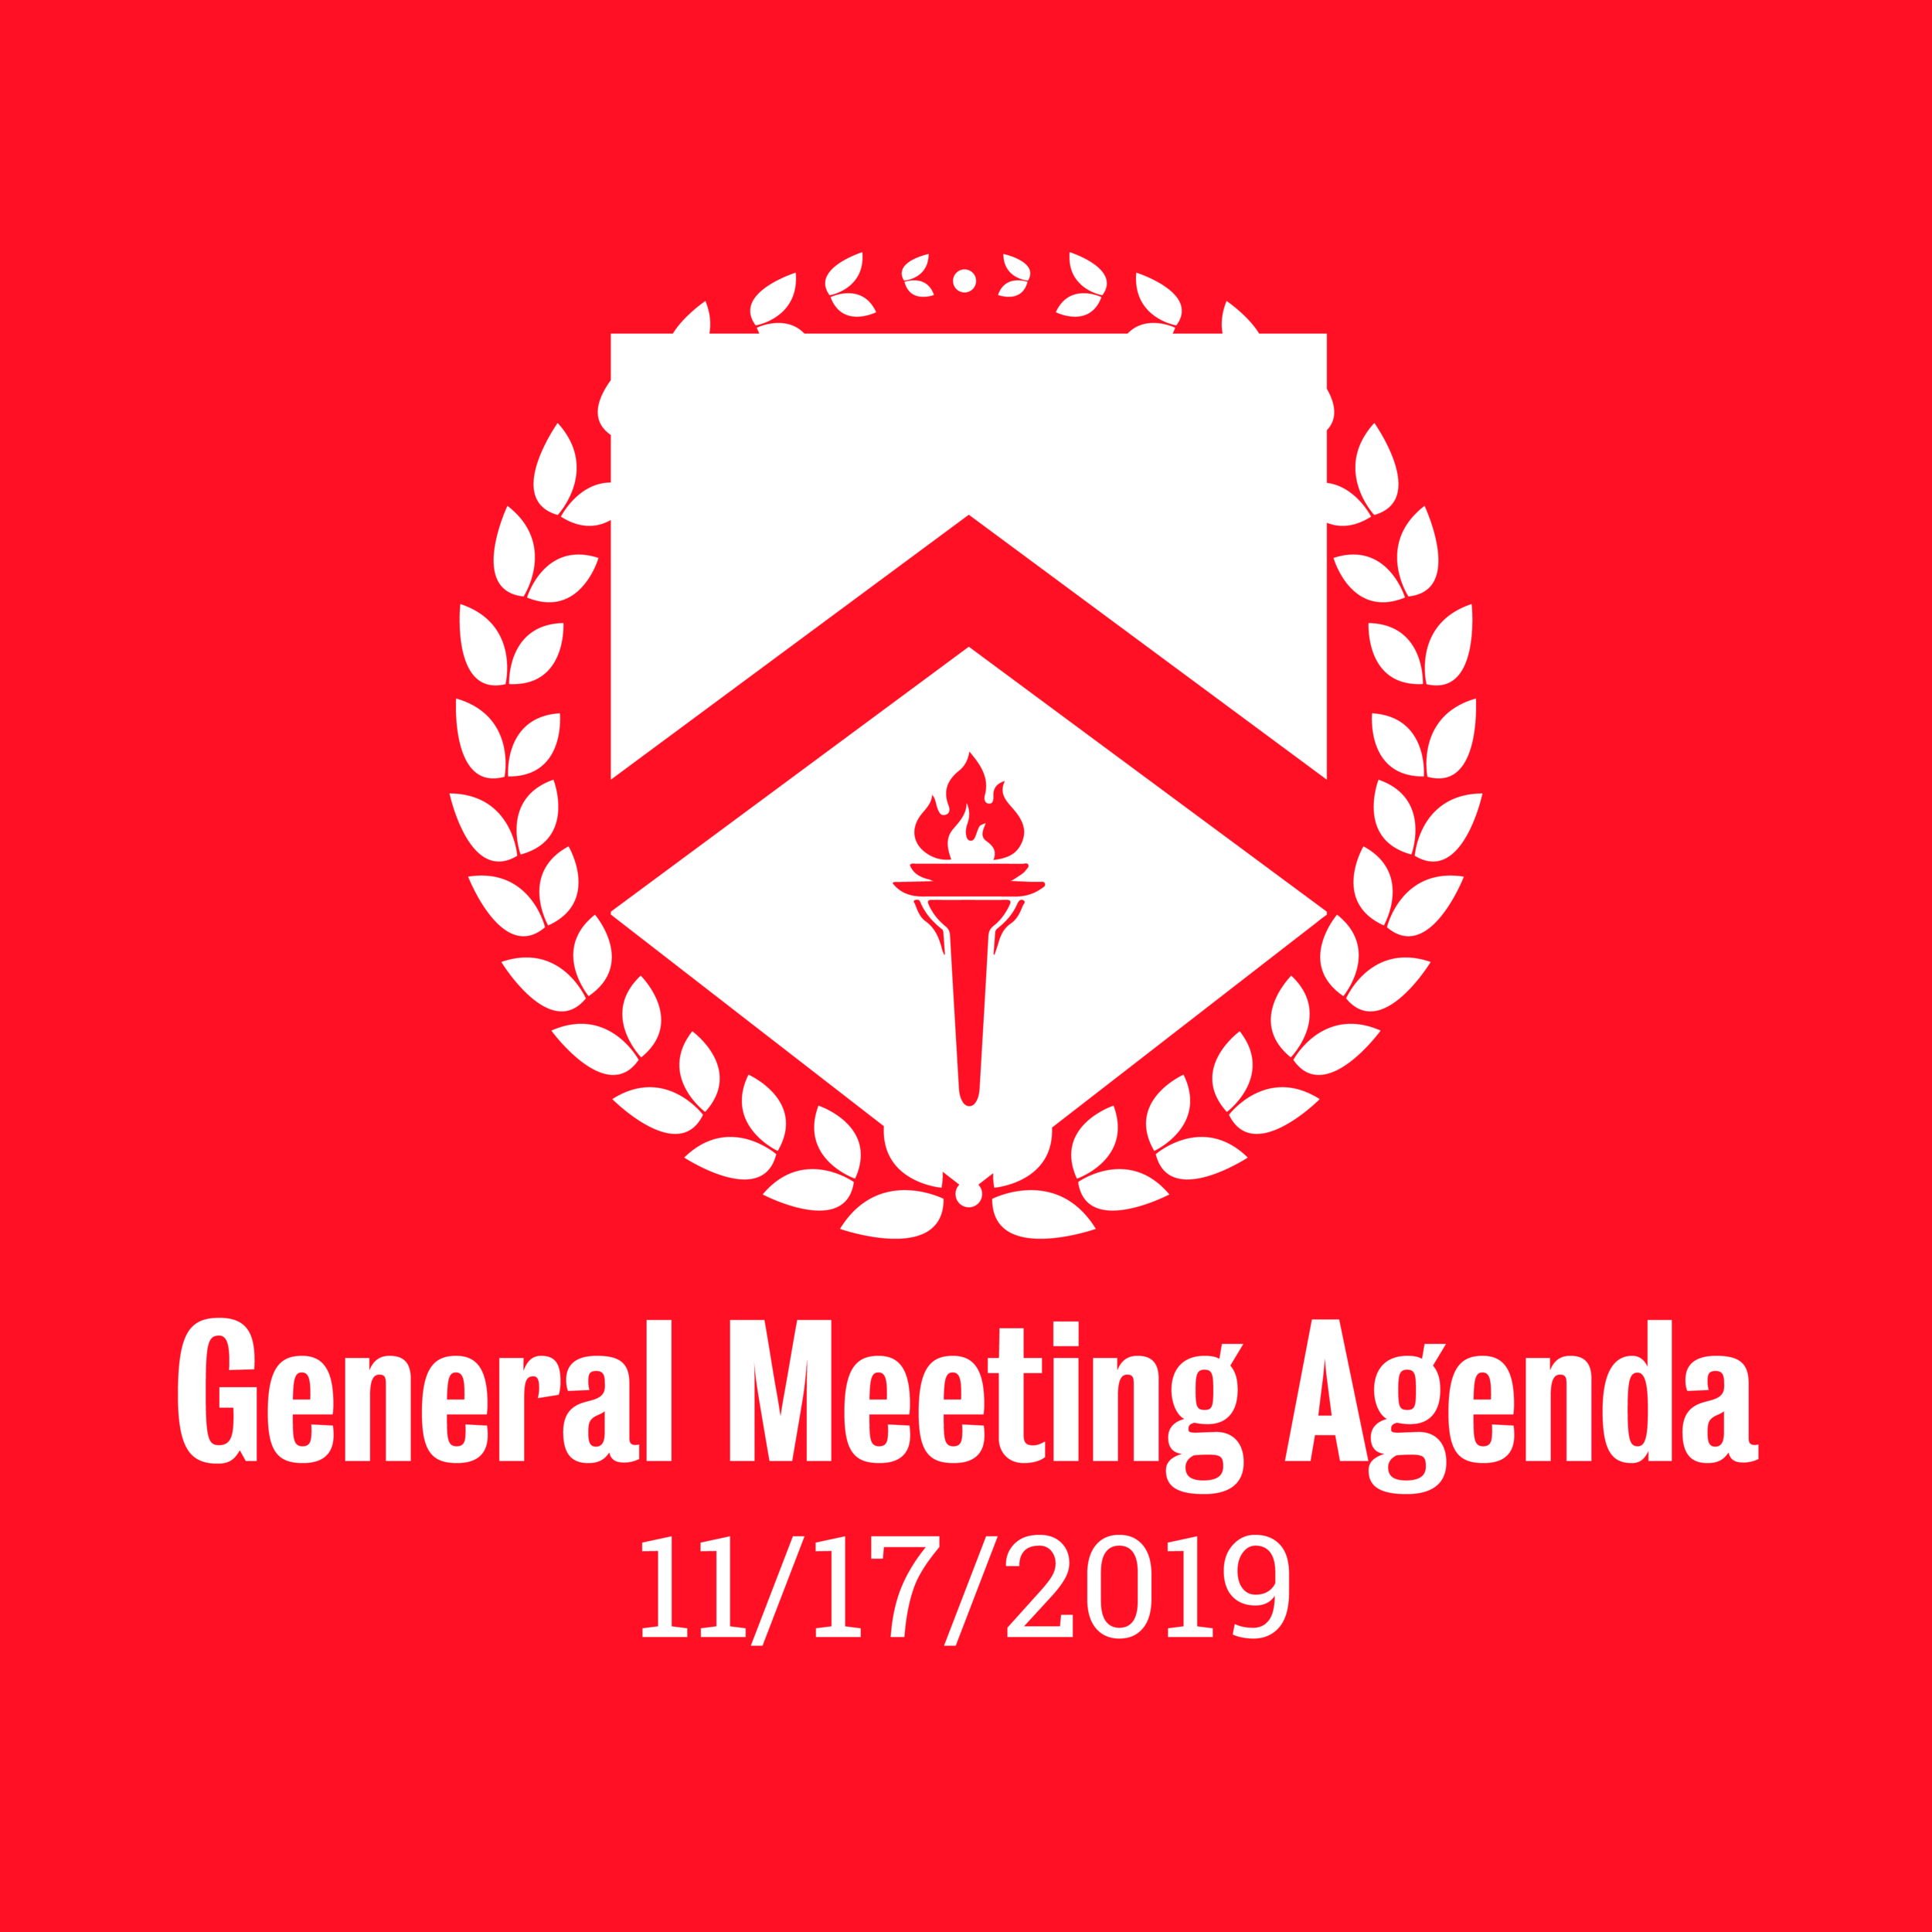 General Meeting Agenda 11/17/2019